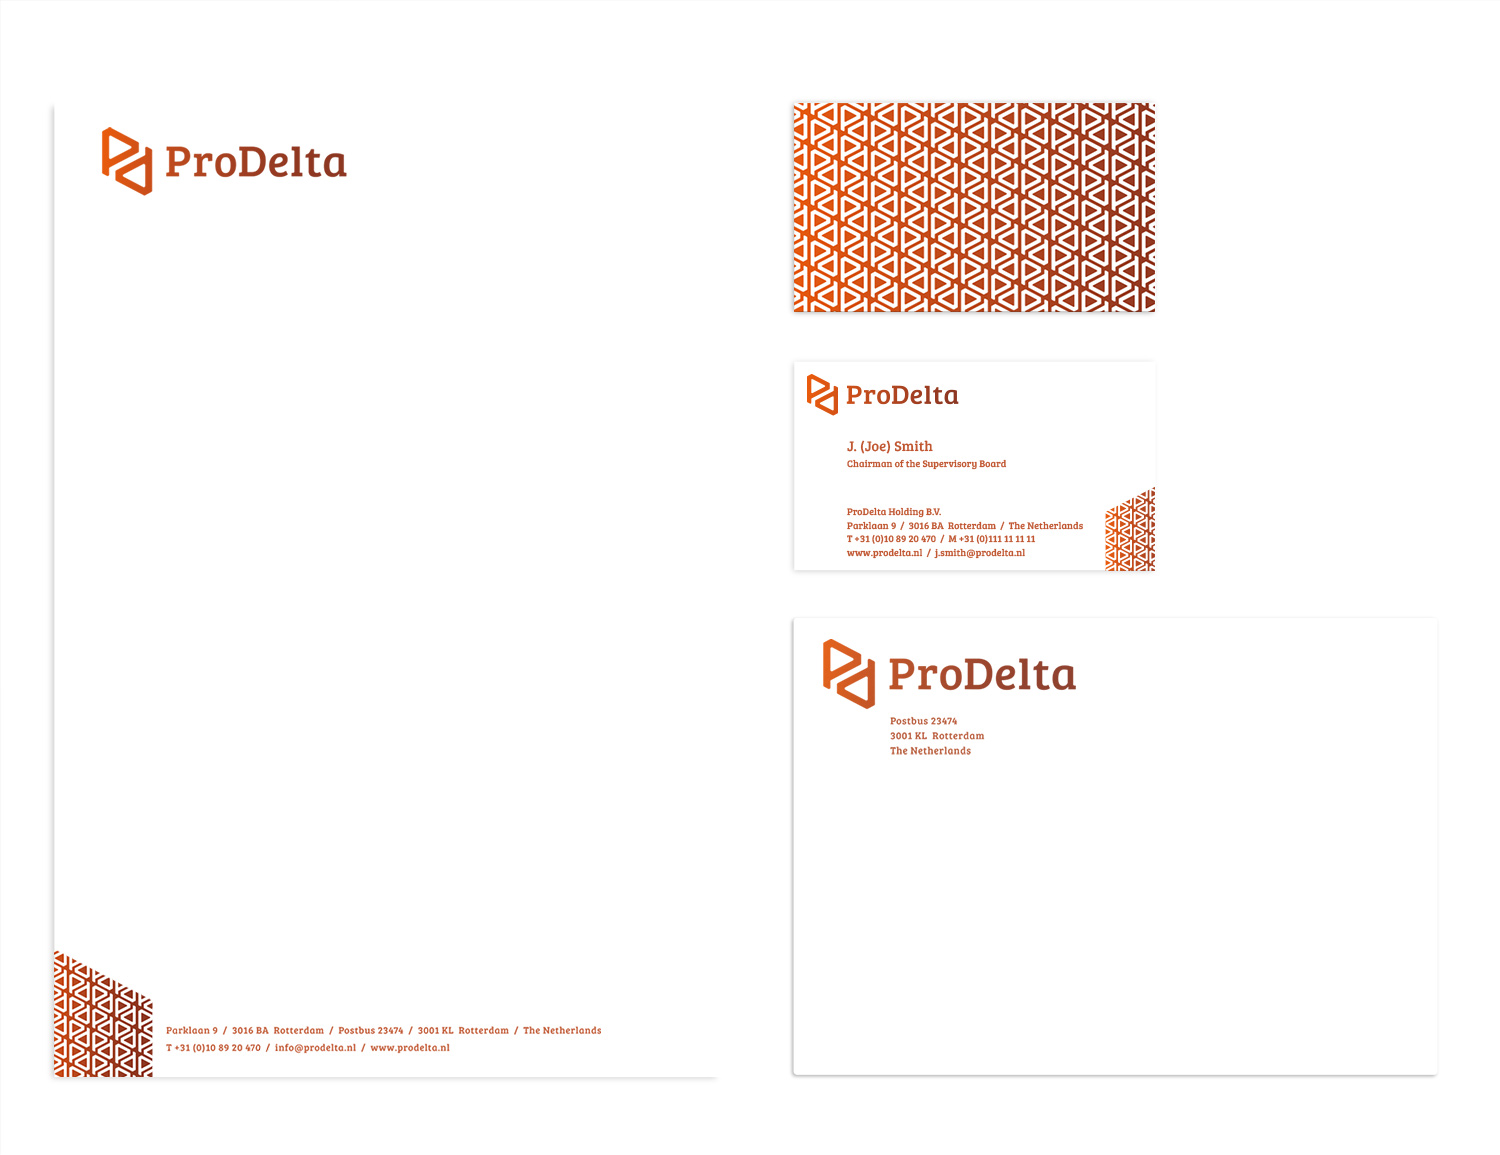 ProDelta branding